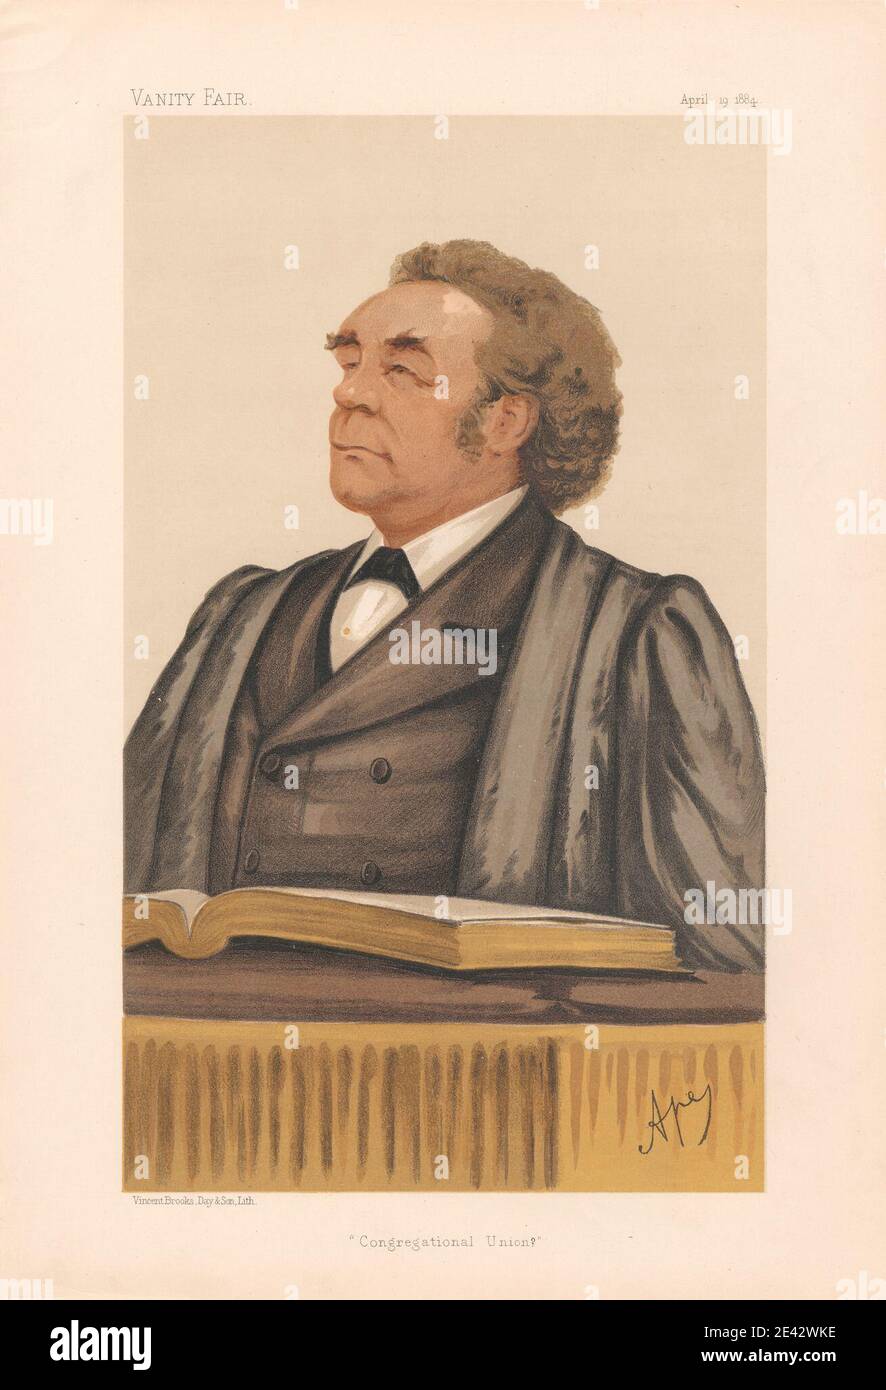 Carlo Pellegrini, 1839-1889, Italien, Foire de la Vnaité - clergé. « Union congrégationale ». Le Rév. Joseph Parker. 19 le 1884 avril 1884. Chromolithographe. Banque D'Images